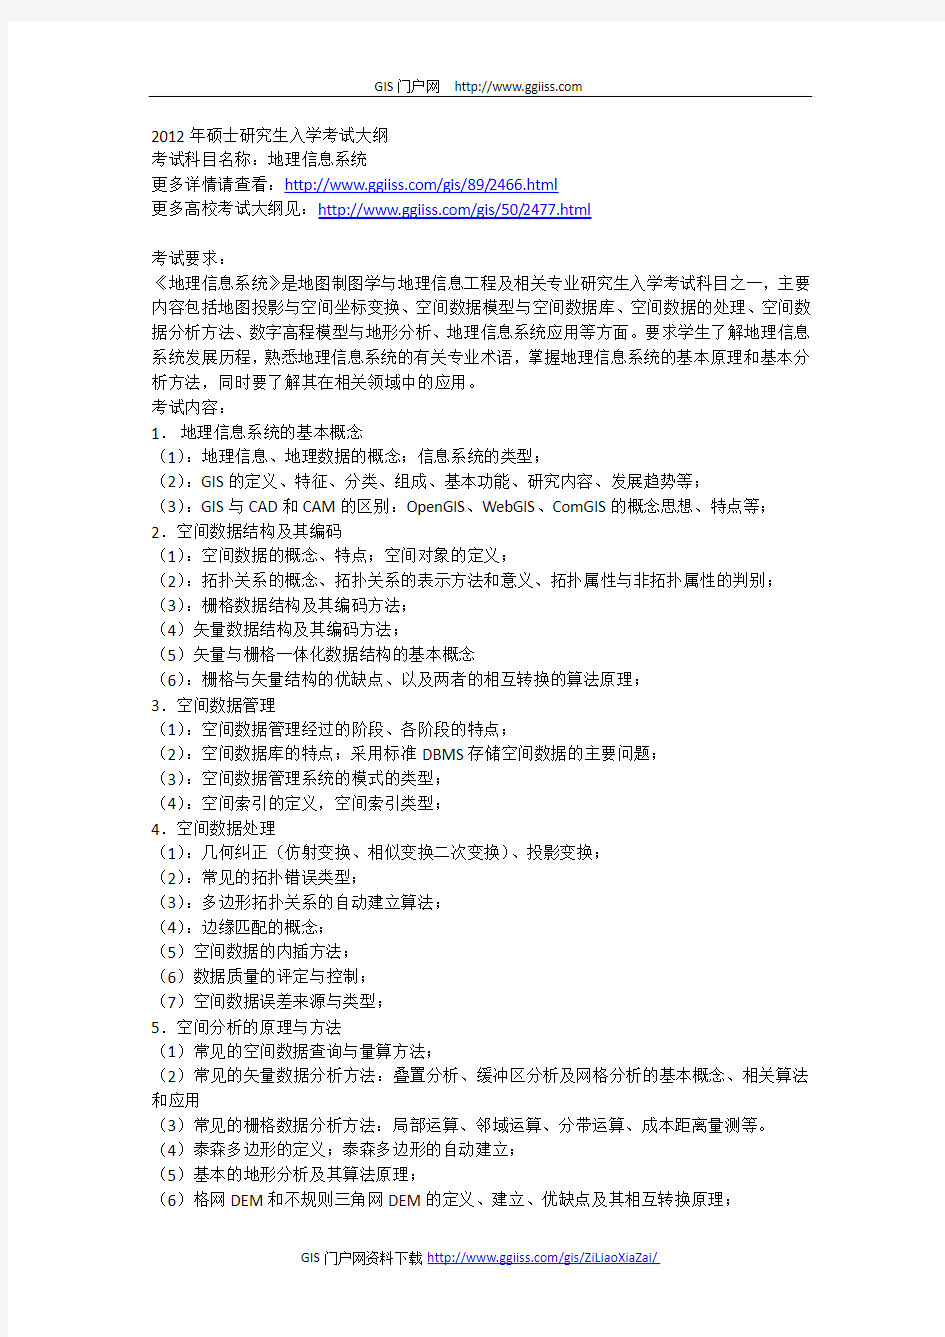 2012年中国石油大学(华东)地理信息系统考试大纲